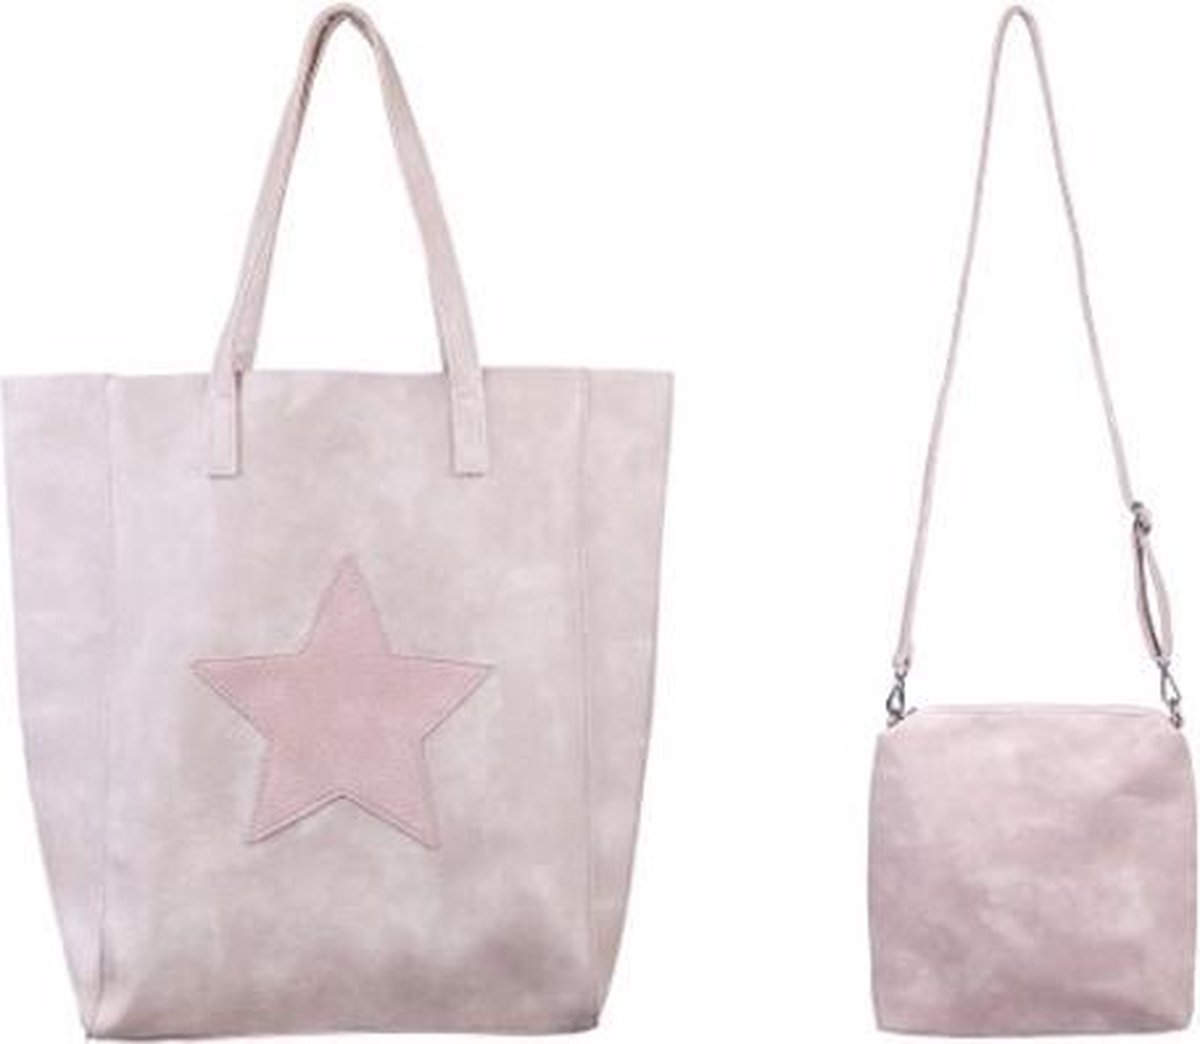 BY-ST6 - Stoere licht roze leren city bag - schoudertas met extra binnentas